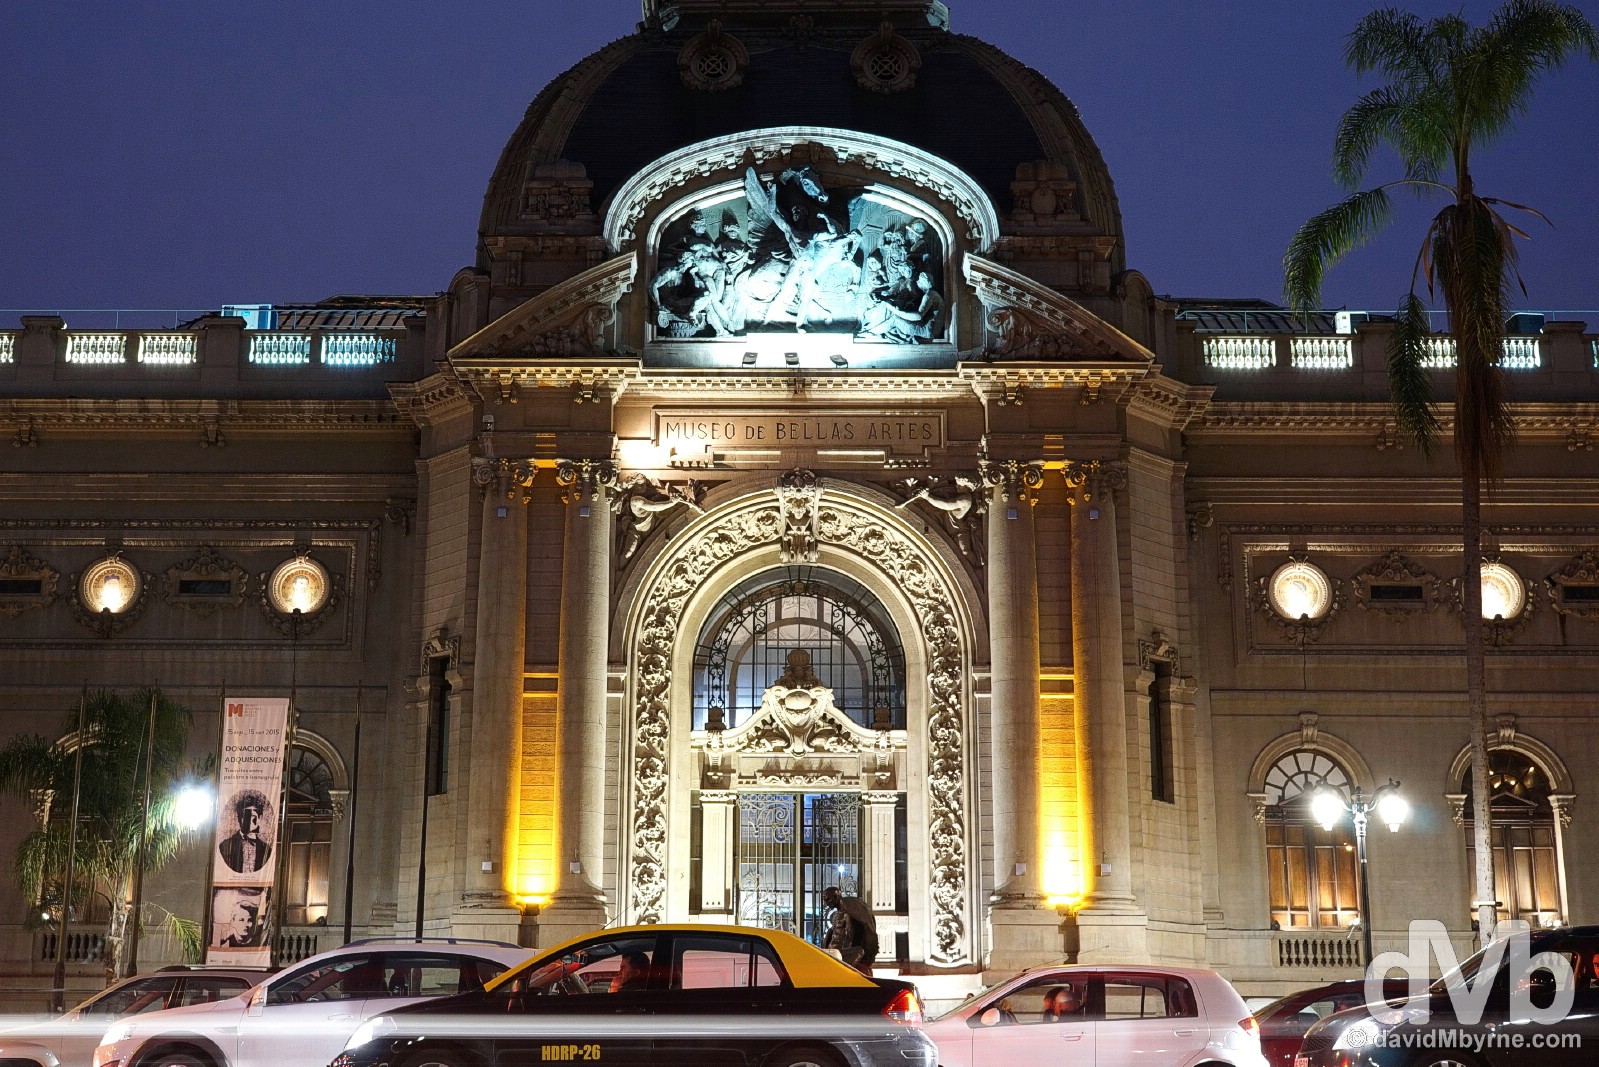 Museo Nacional de Belle Artes in Santiago, Chile. October 5, 2015.